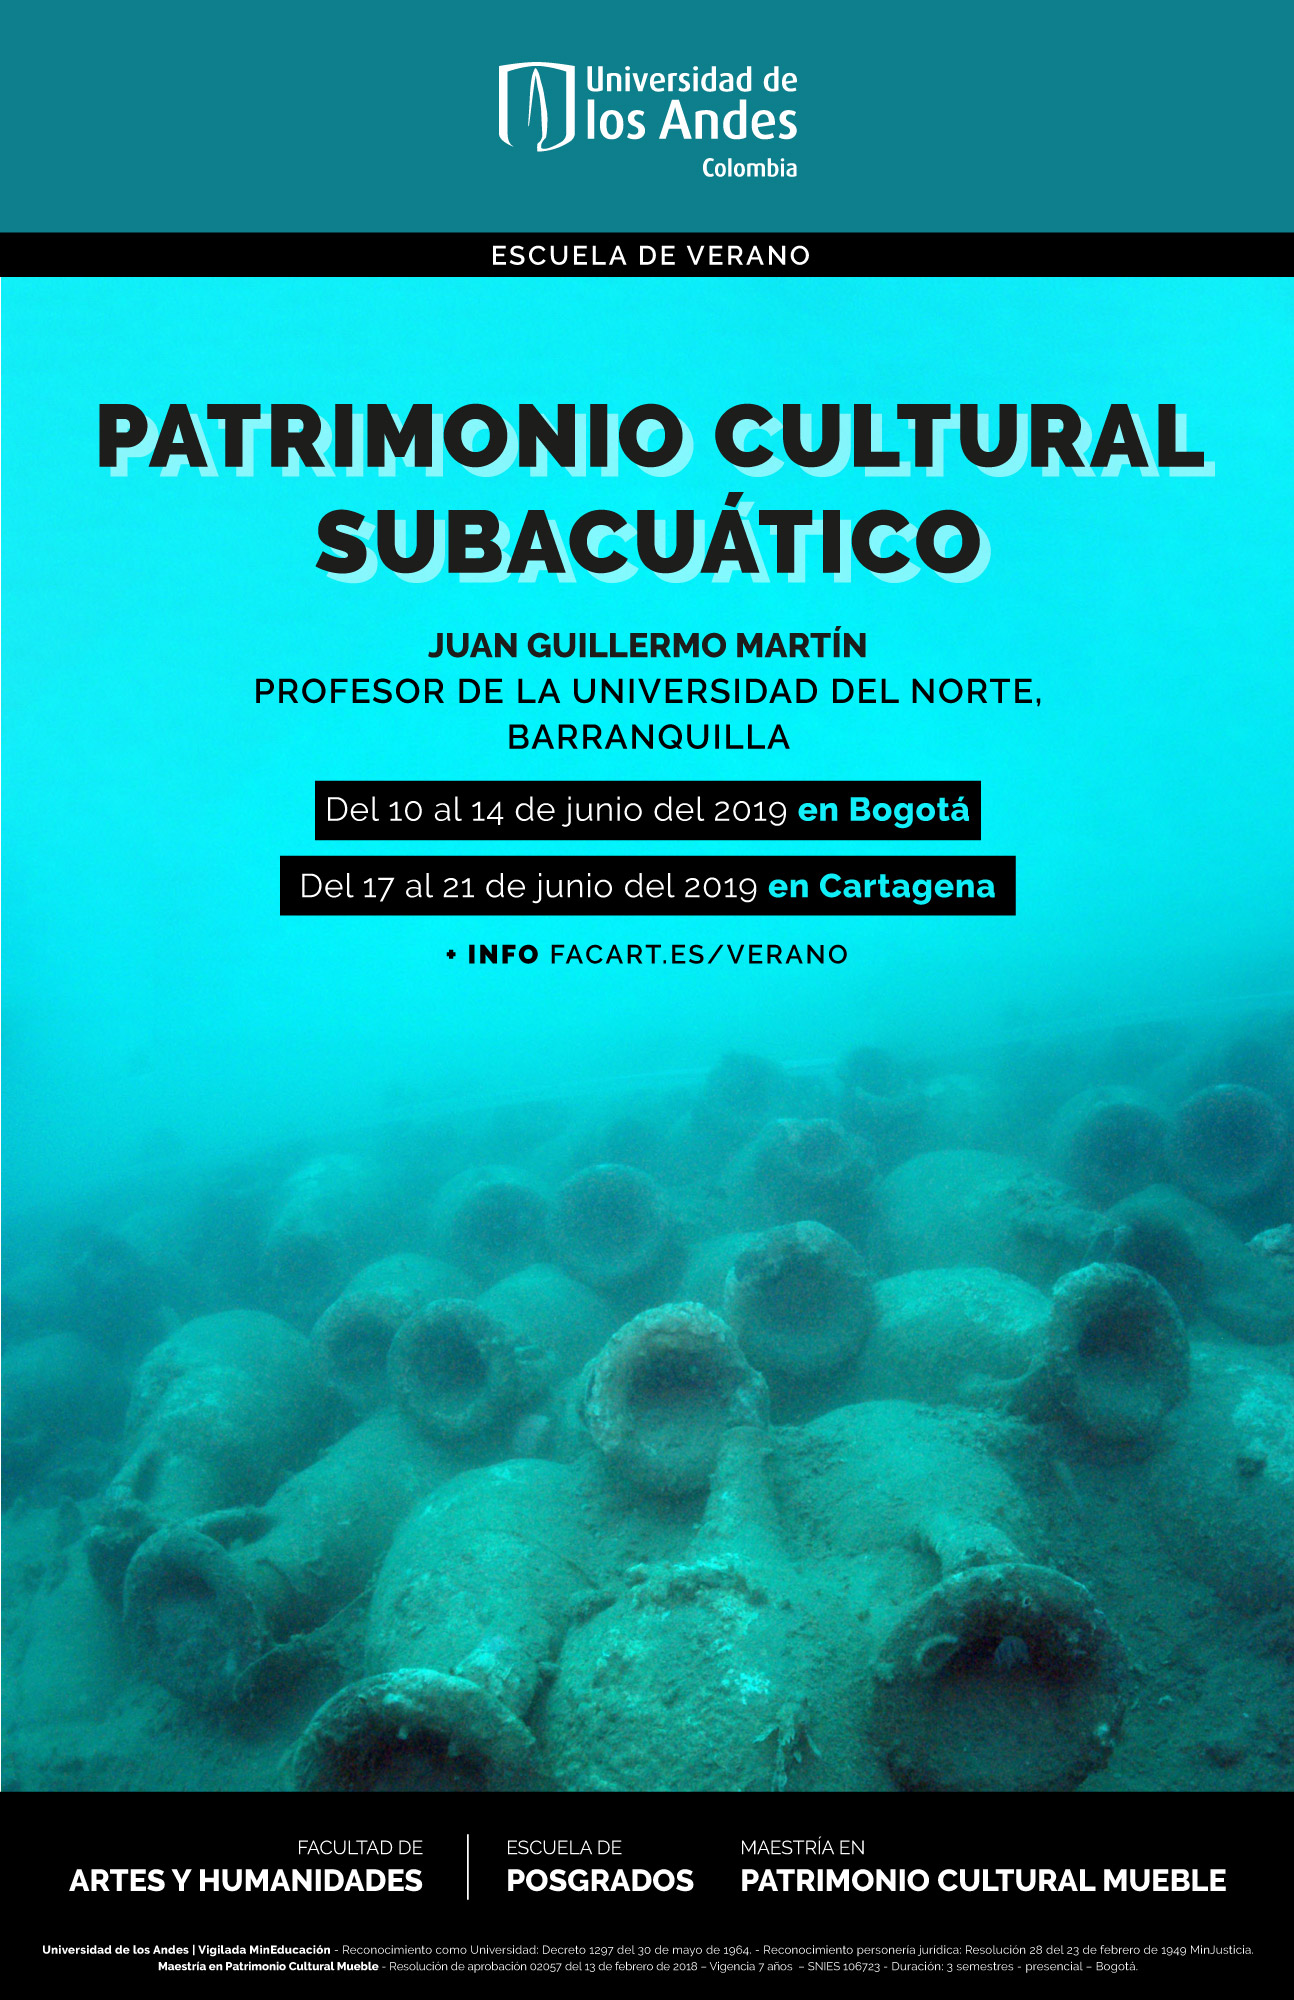 Patrimonio-cultural-subacuatico---Escuela-de-verano---de-Posgrados---Facultad-de-Artes-y-Humanidades---Universidad-de-los-Andes